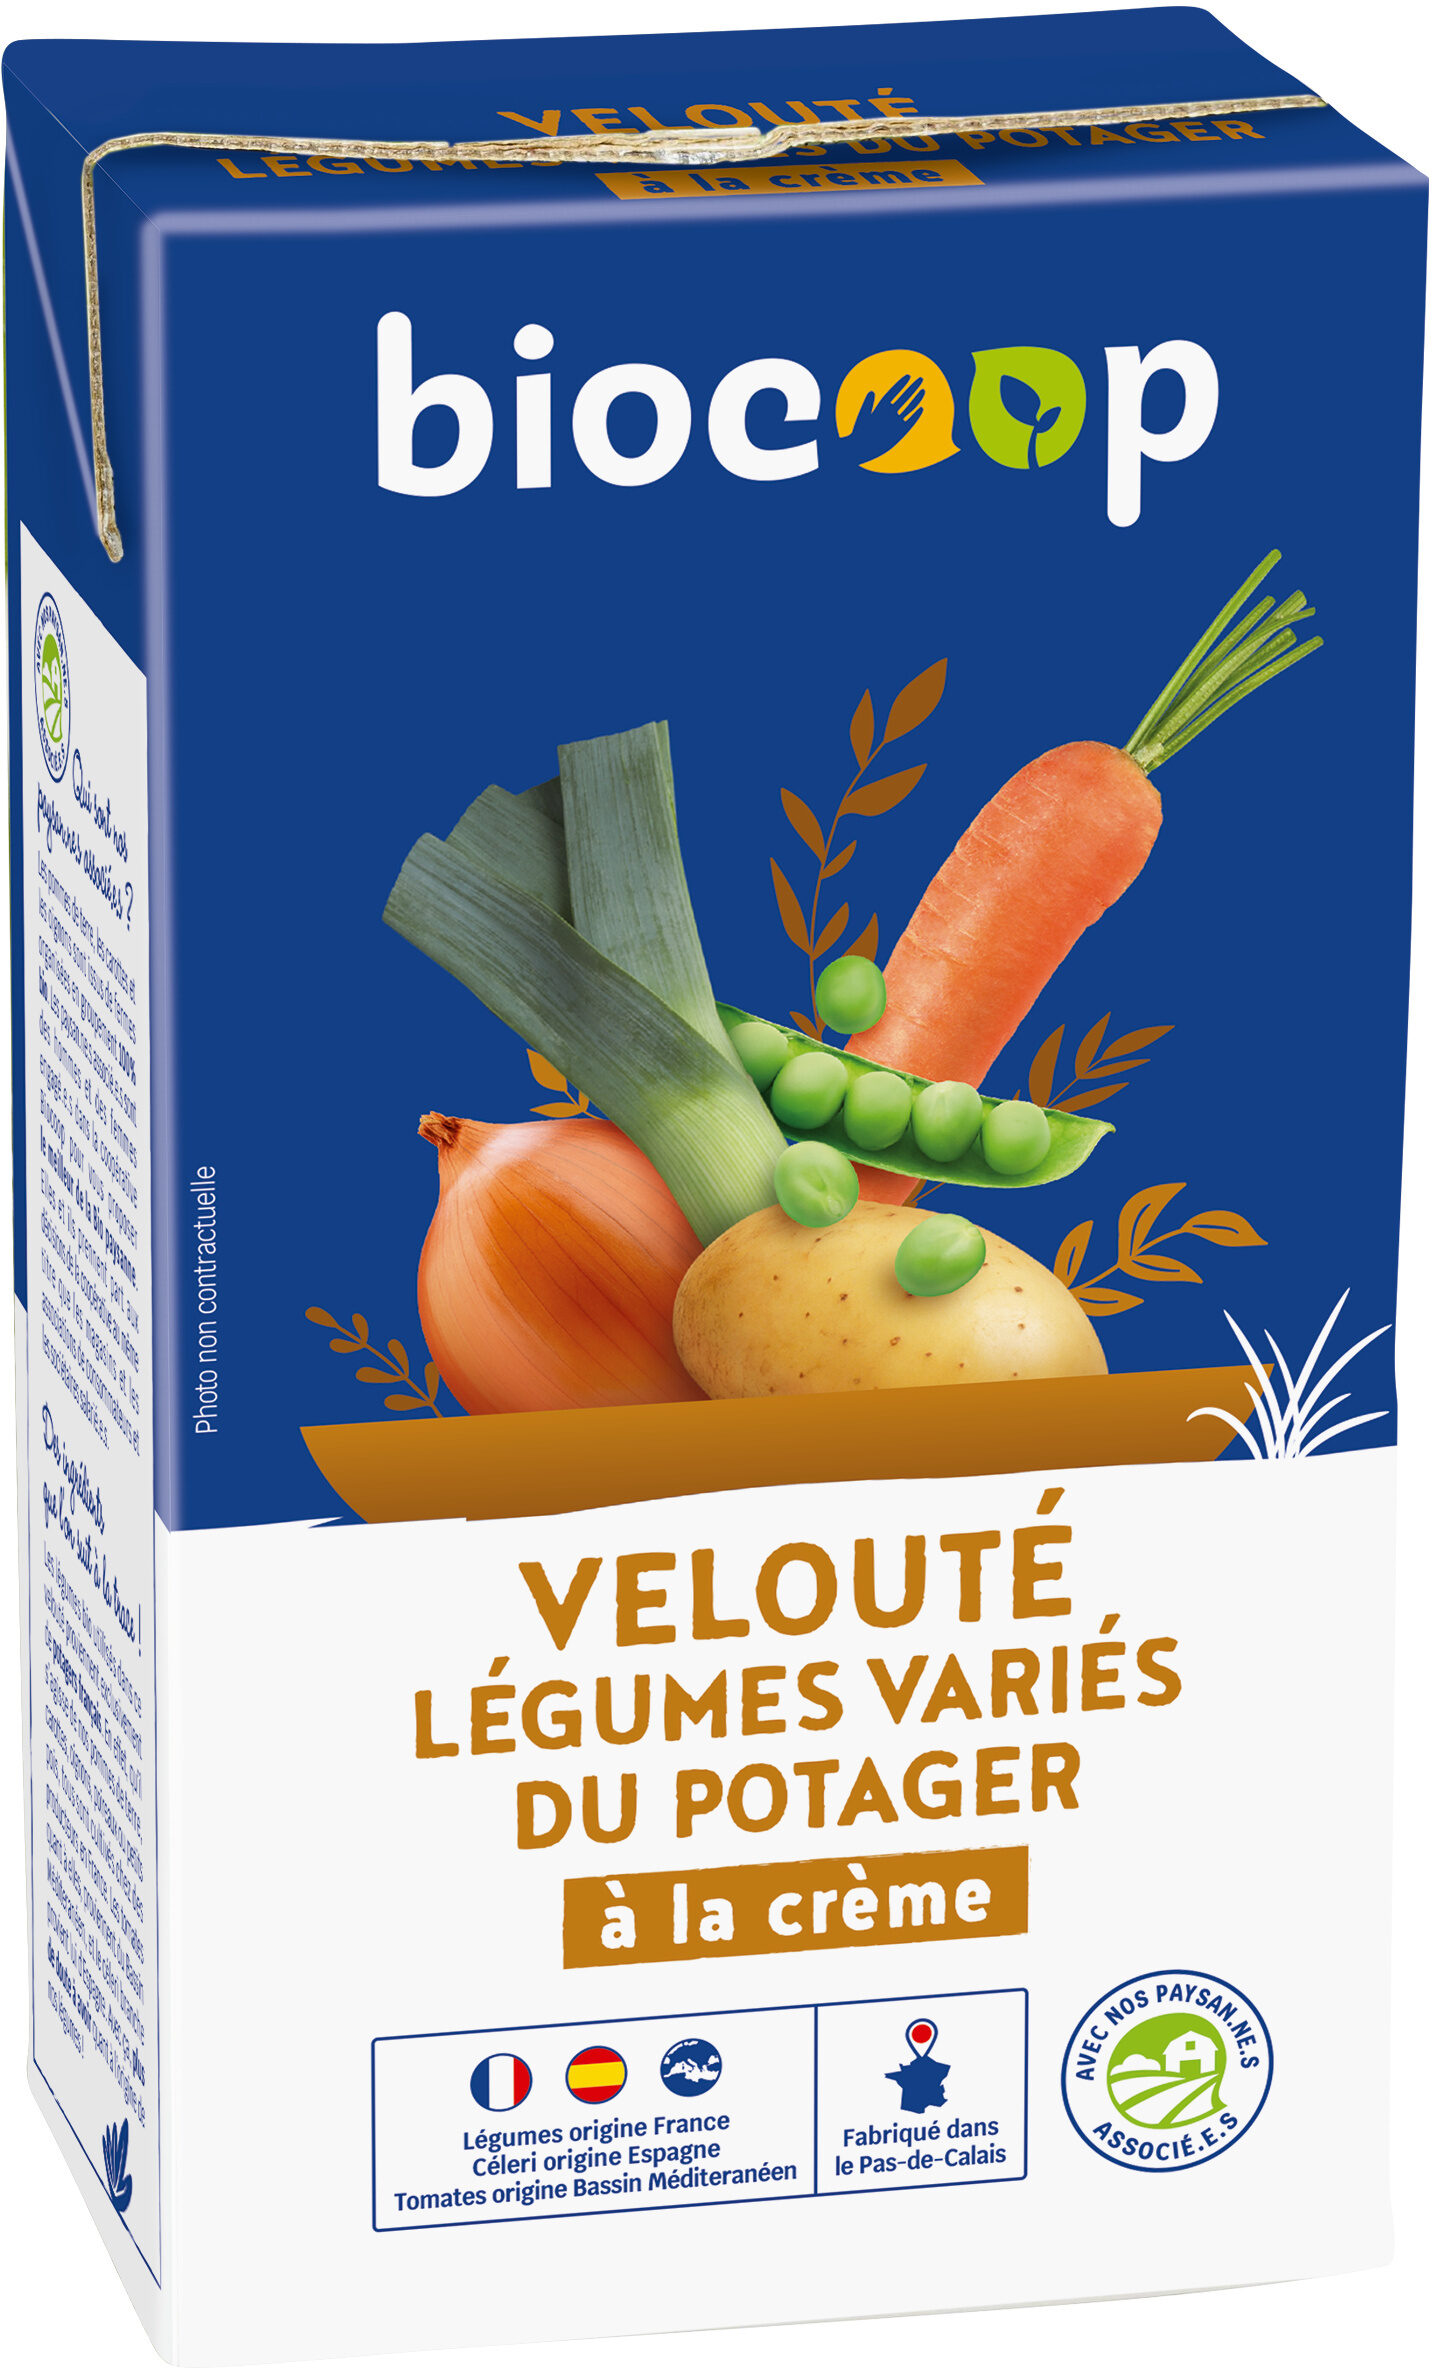 Velouté légumes variés du potager - Product - fr